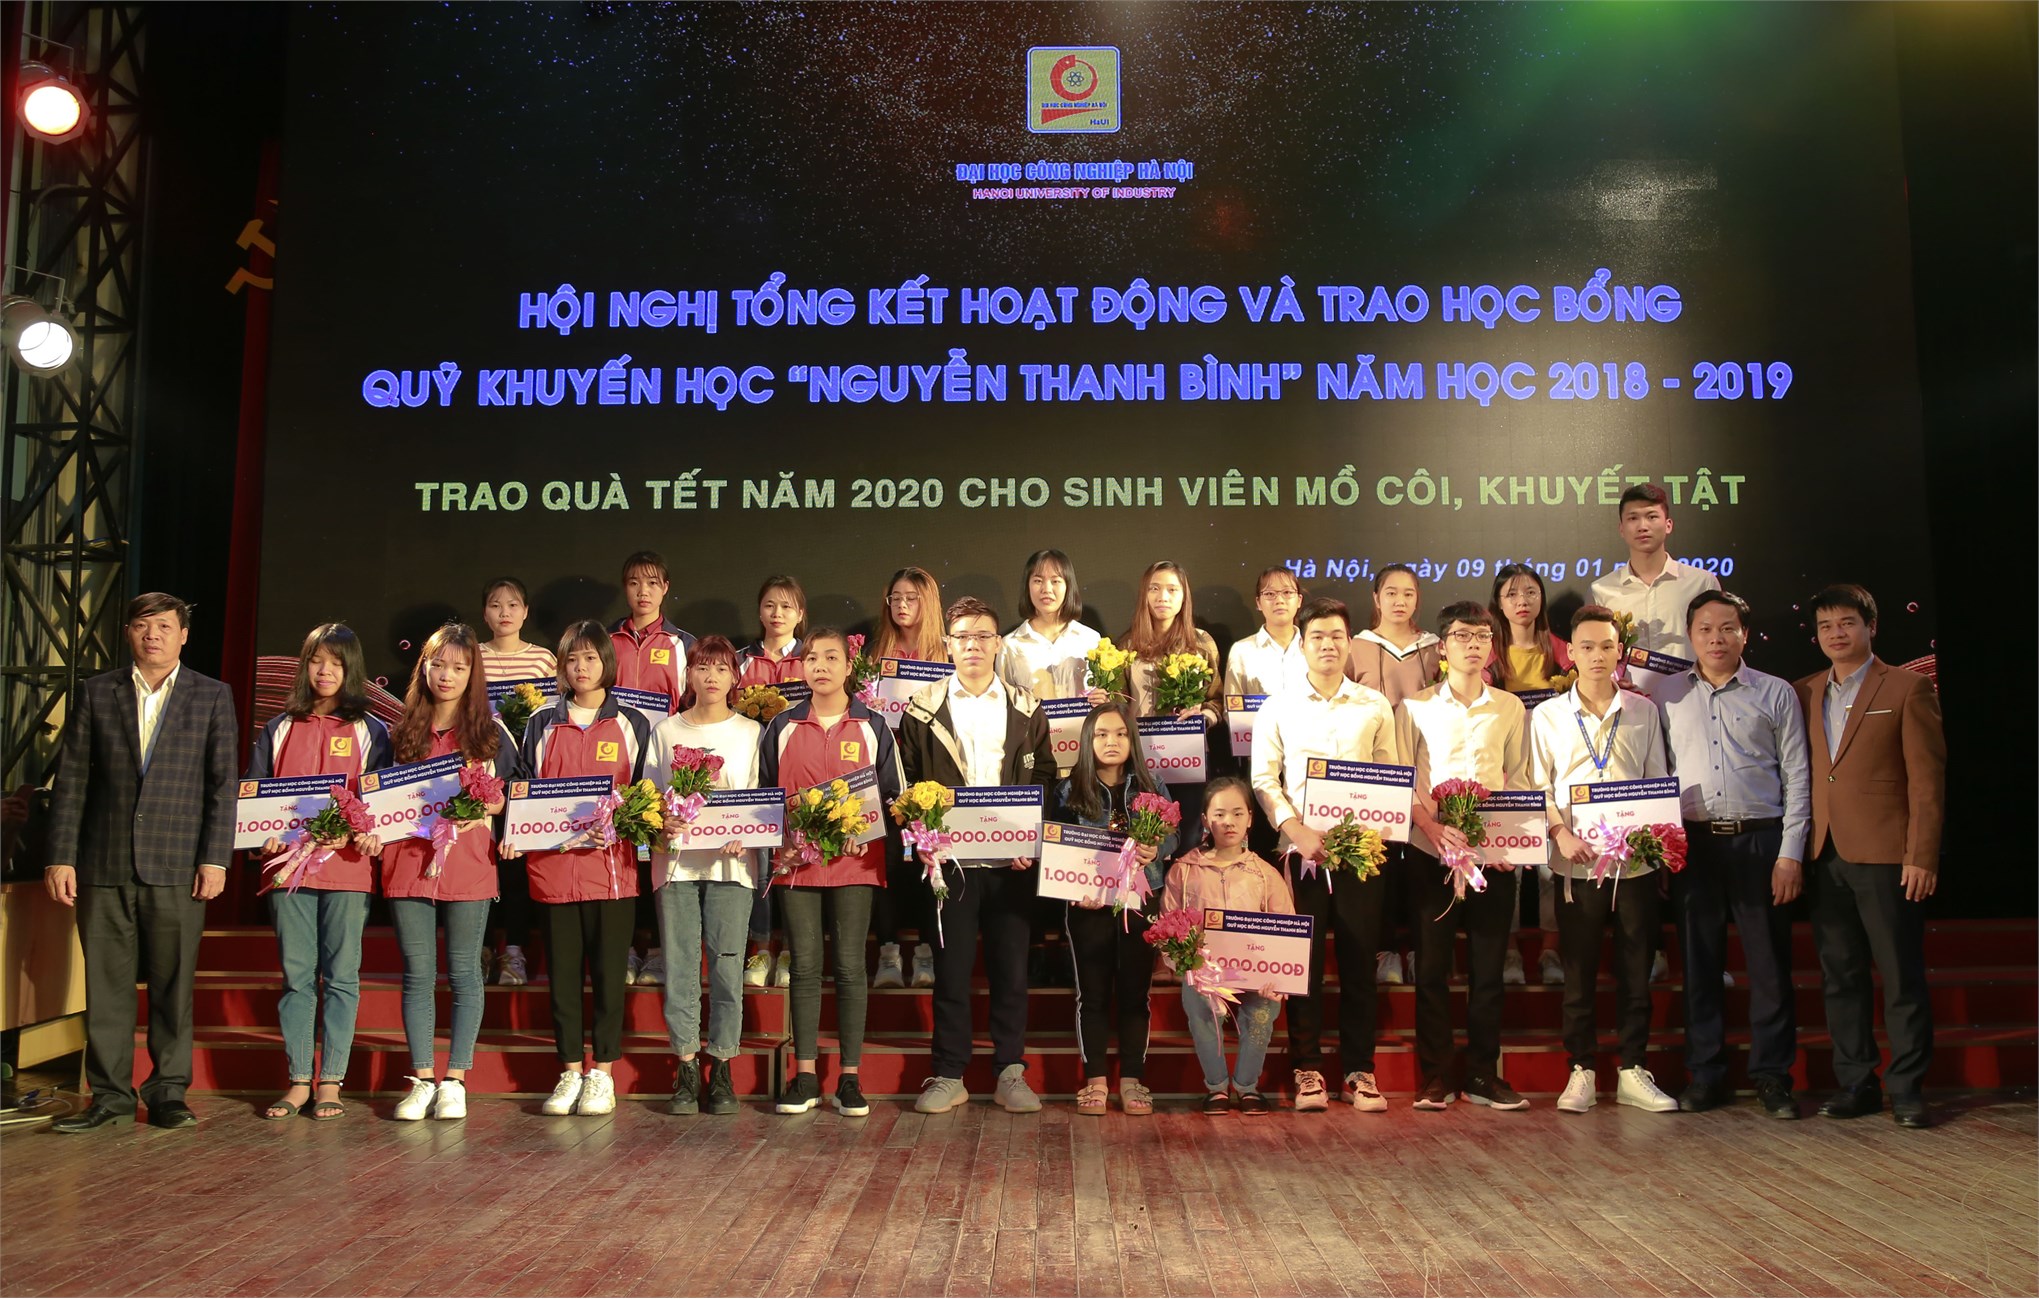 Hội nghị tổng kết và trao học bổng Nguyễn Thanh Bình năm học 2018 – 2019